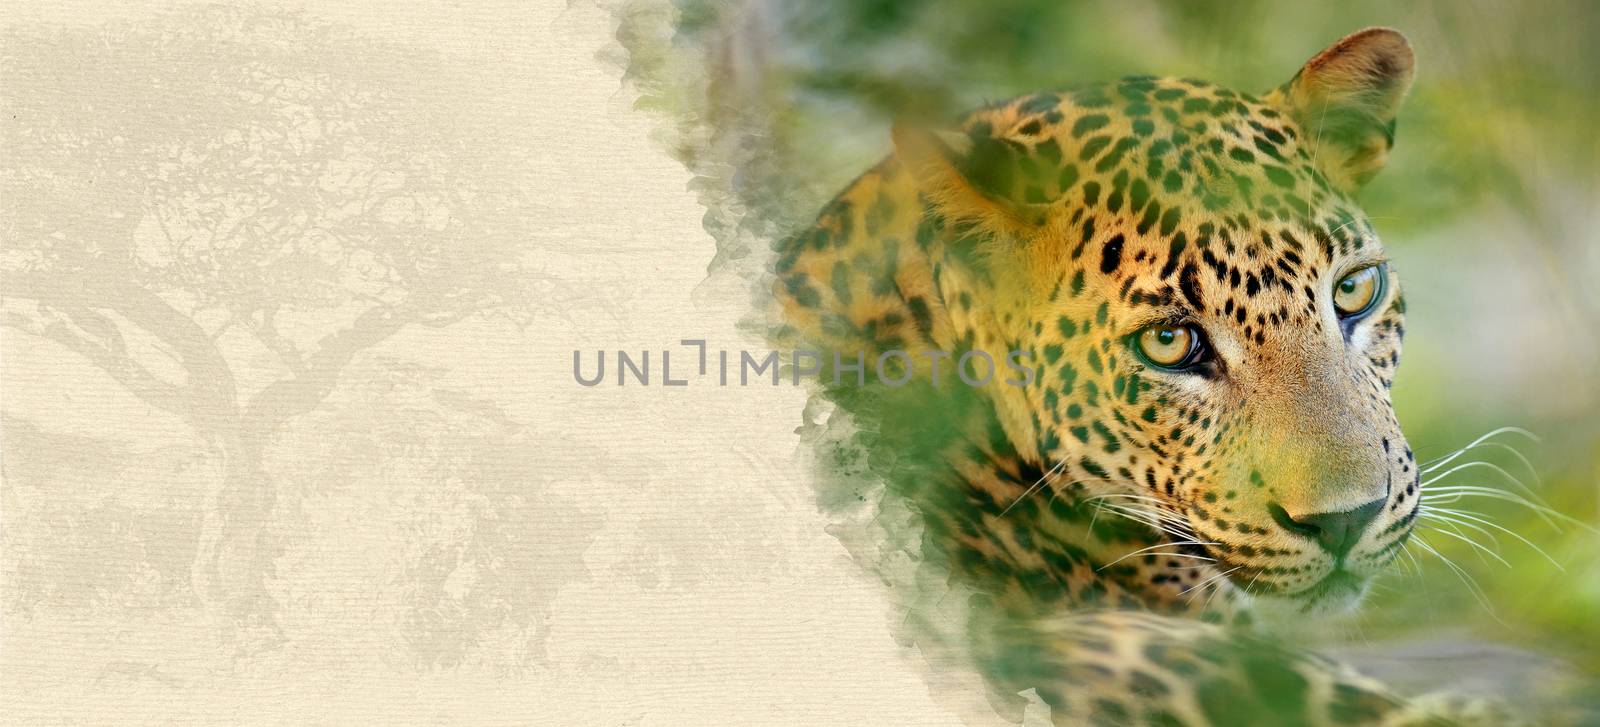 Leopard on textured paper by byrdyak